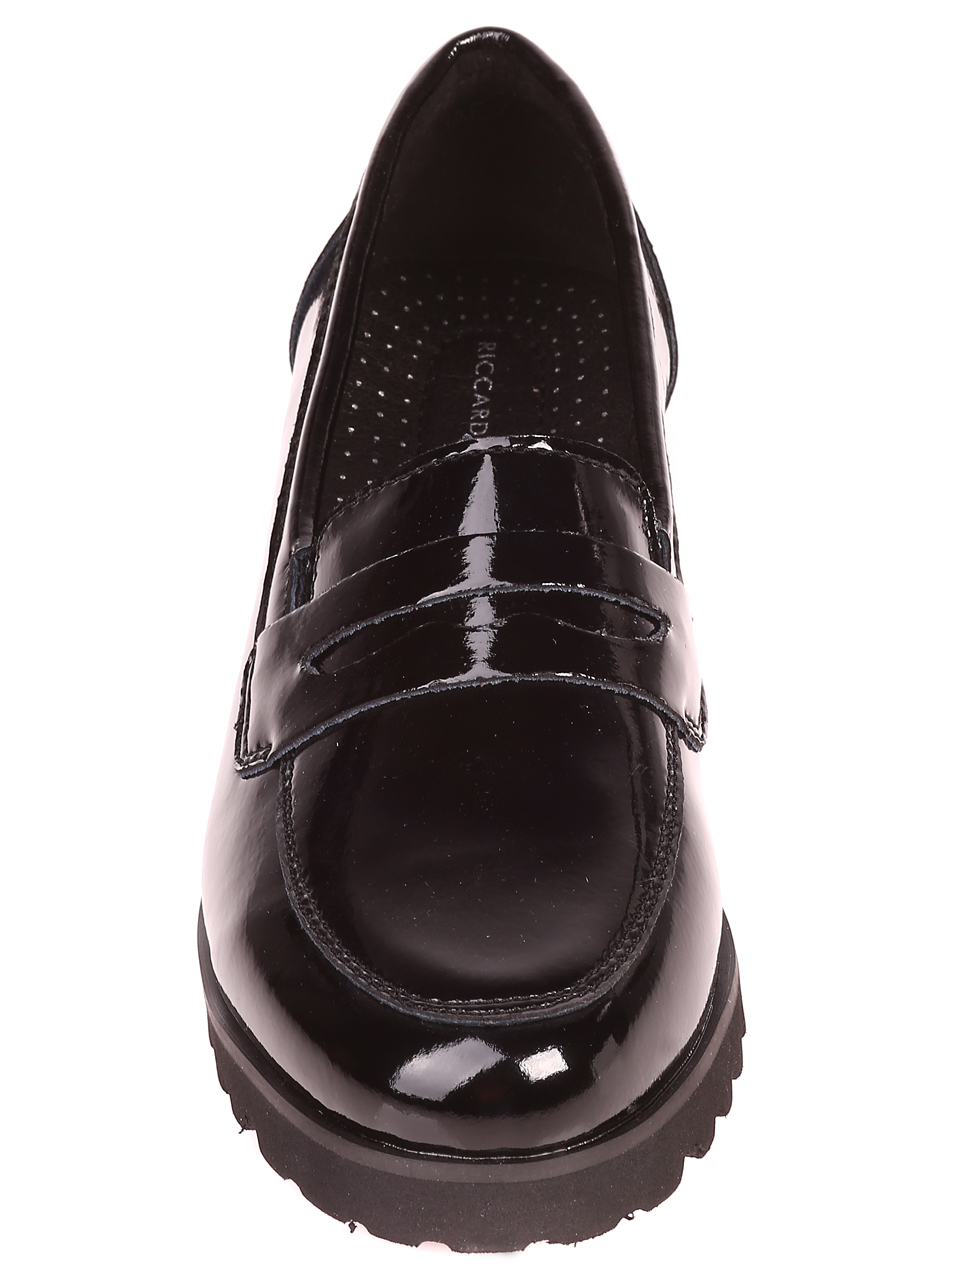 Дамски лачени мокасини в черно 3AF-21554 black leather